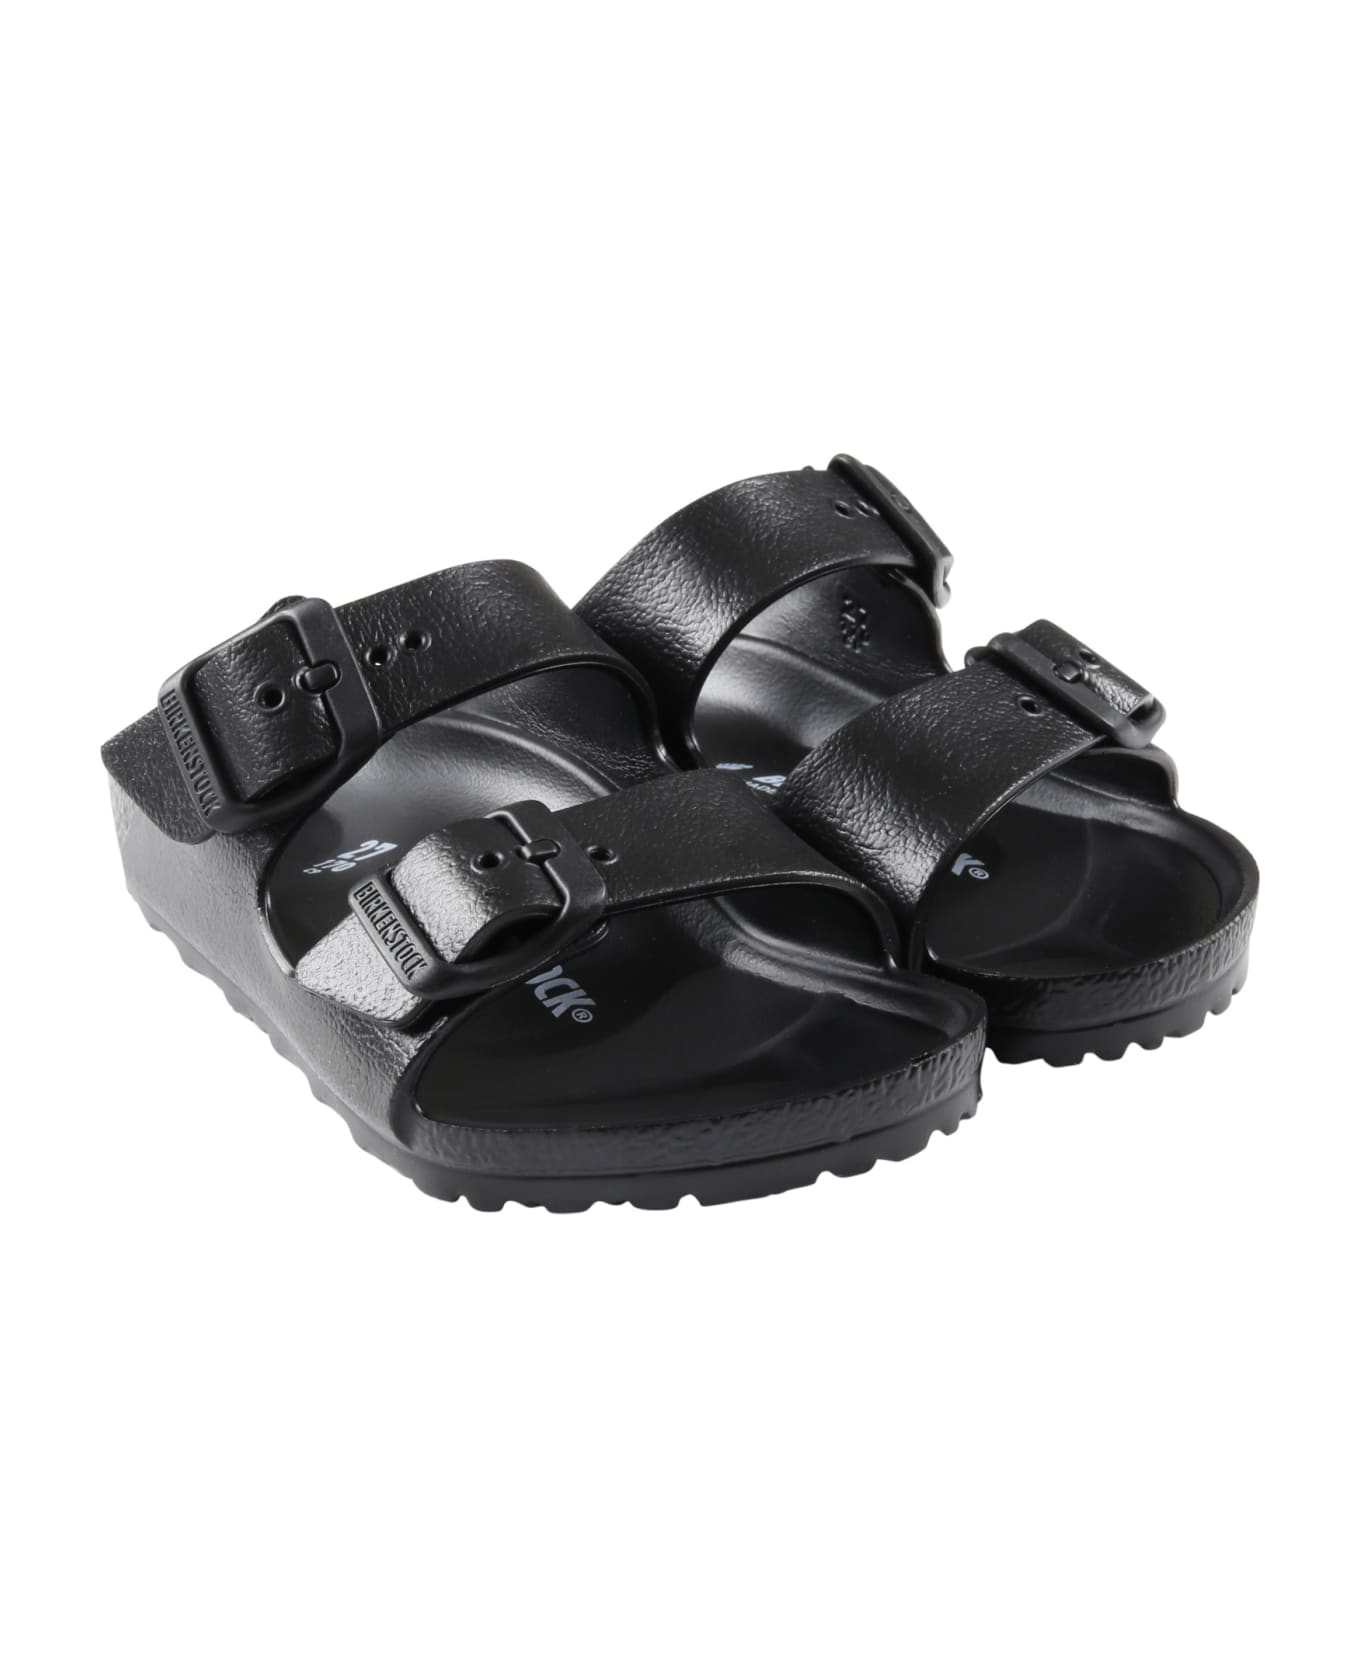 Birkenstock Black Sandals "arizona Eva Kids" For Kids With Logo - Black シューズ